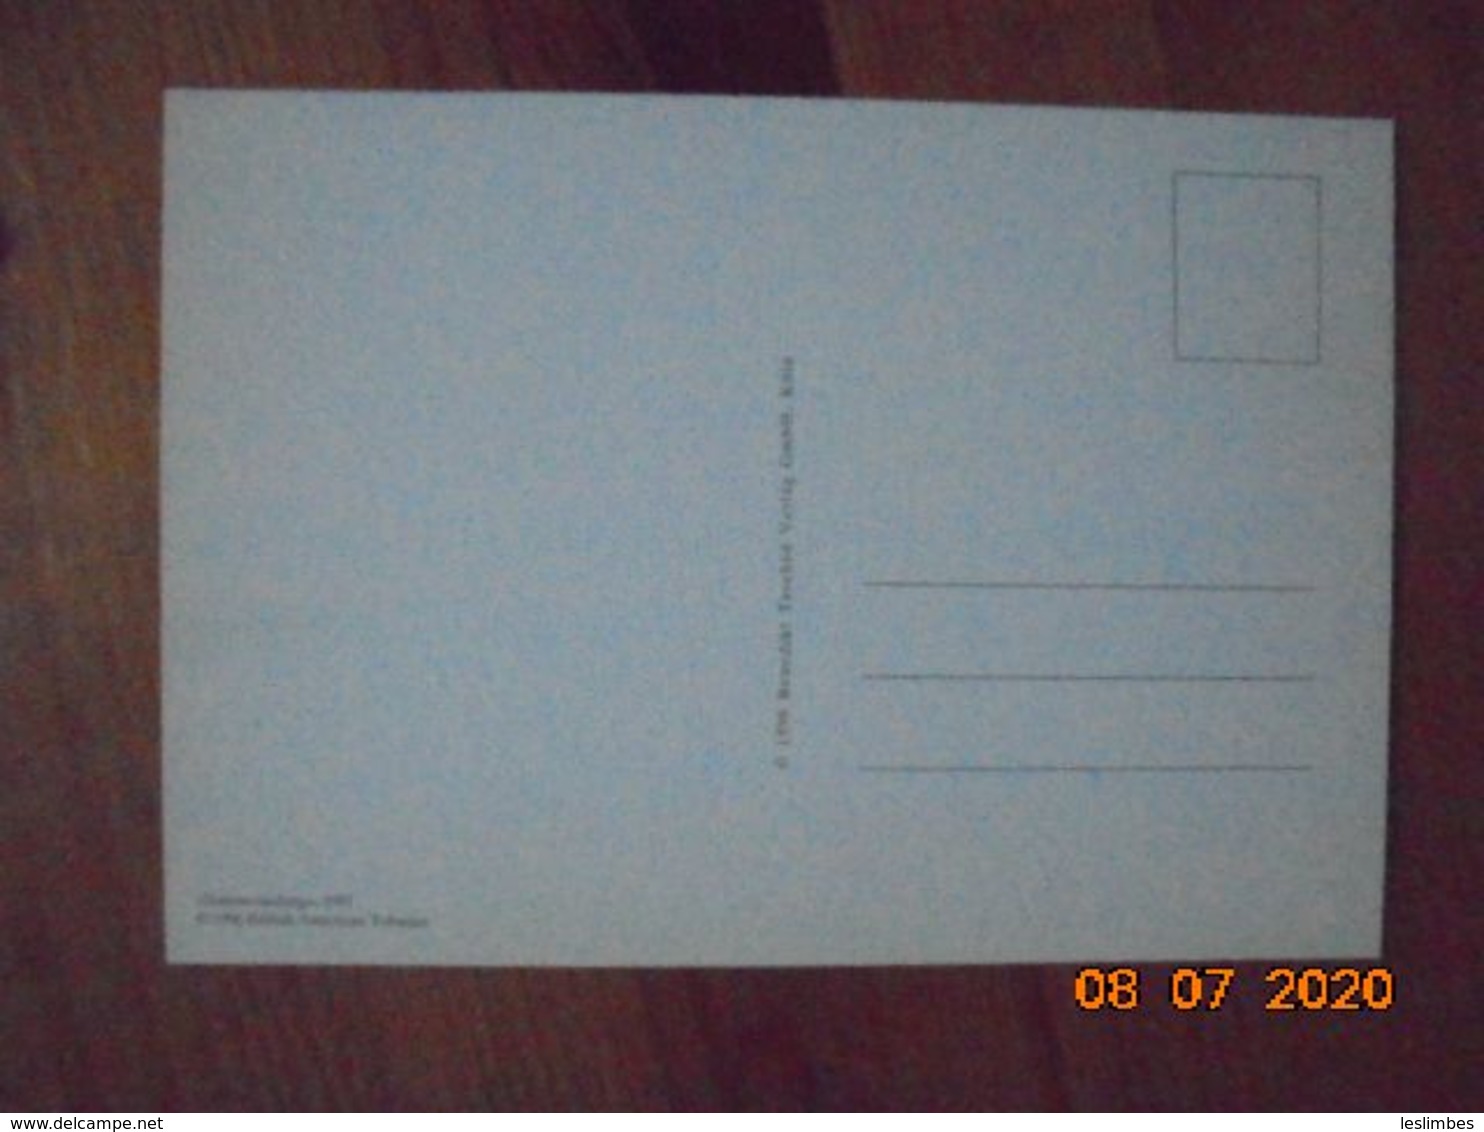 Carte Postale Publicitaire Allemand (Taschen 1996) 16,3 X 11,4 Cm. Lucky Strike. Sonst Nichts. "Sommeranfang" 1991 - Werbeartikel